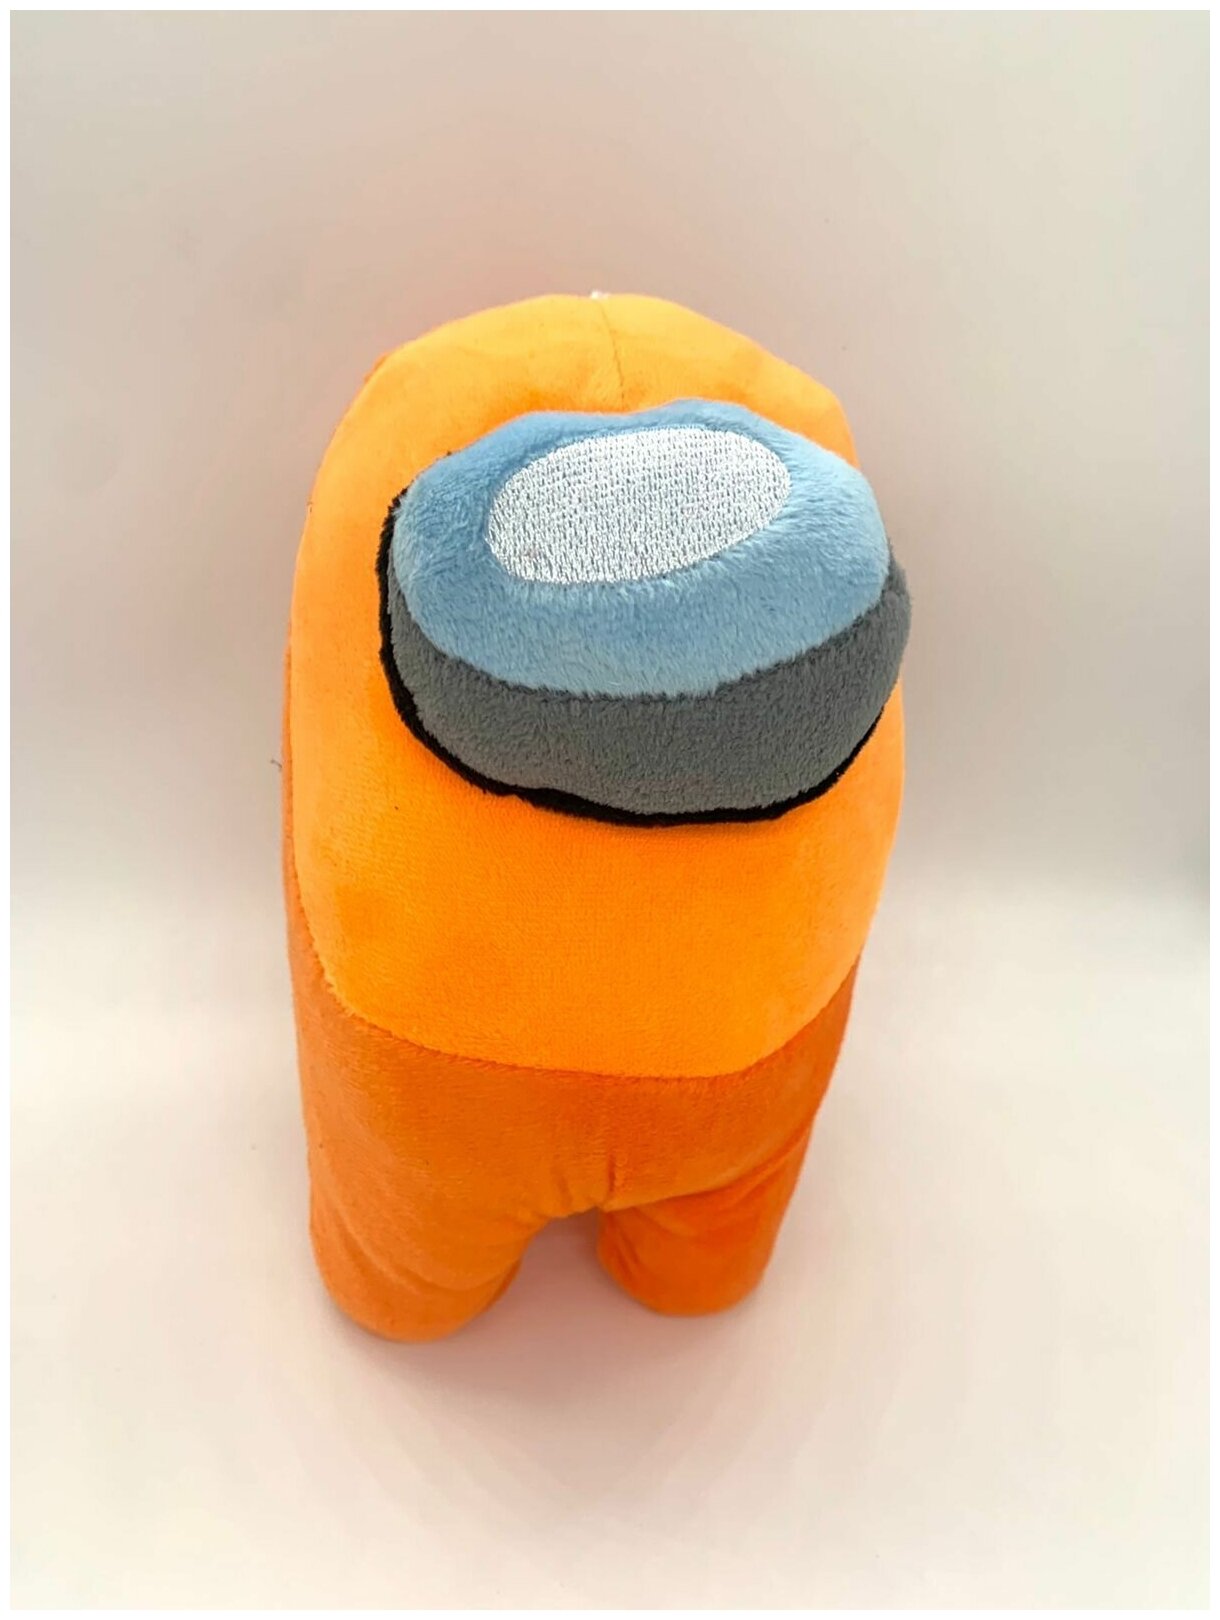 Мягкая плюшевая игрушка Амонг ас (Among us) 20 см Оранжевый